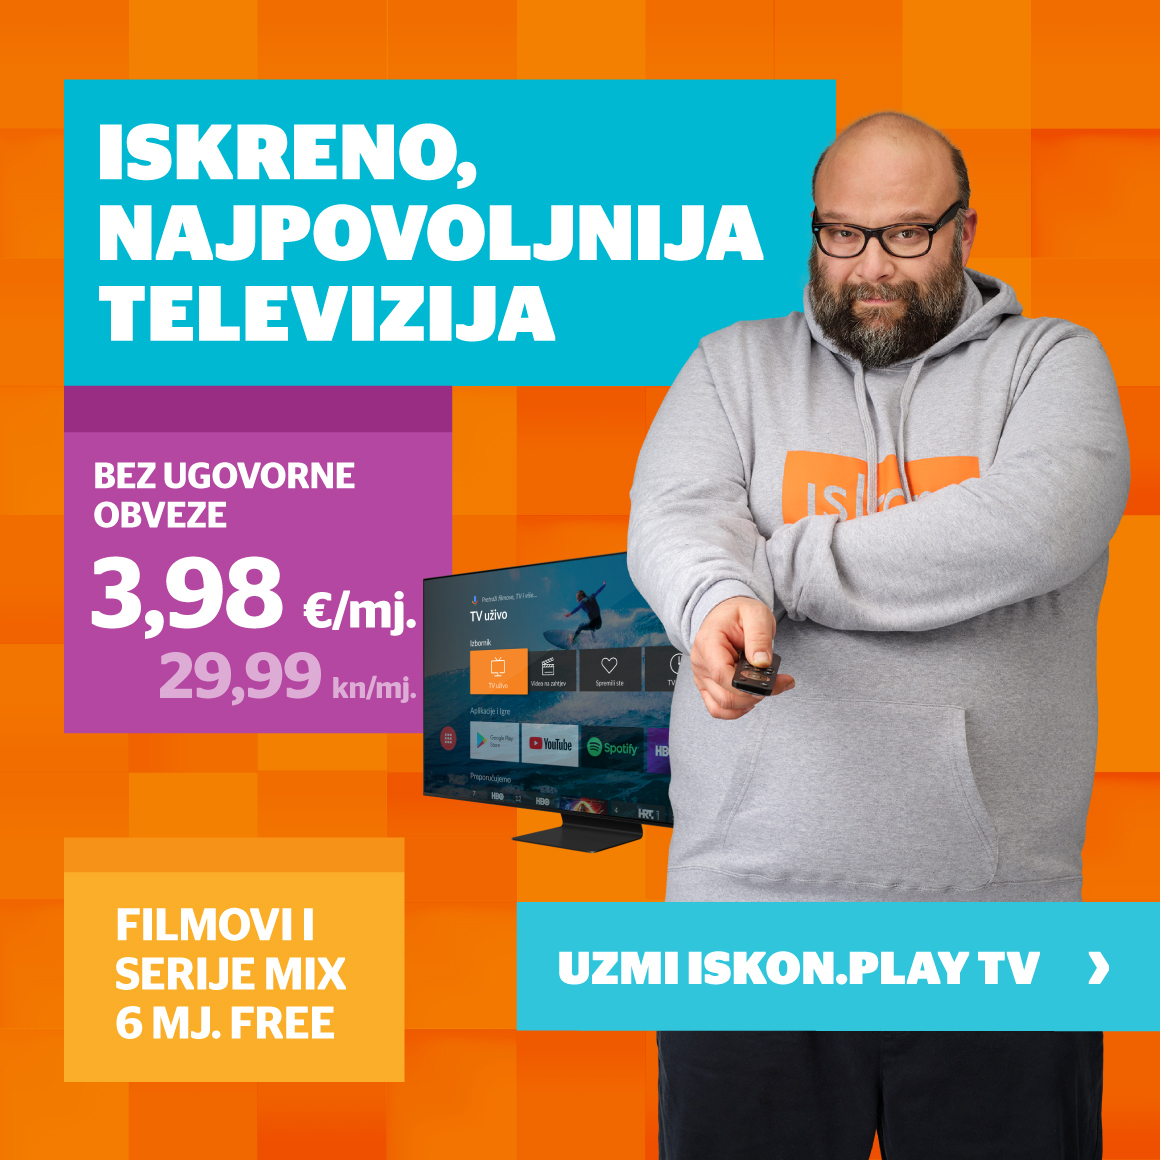 Iskon Play TV, najpovoljnija televizija 3,98 eura